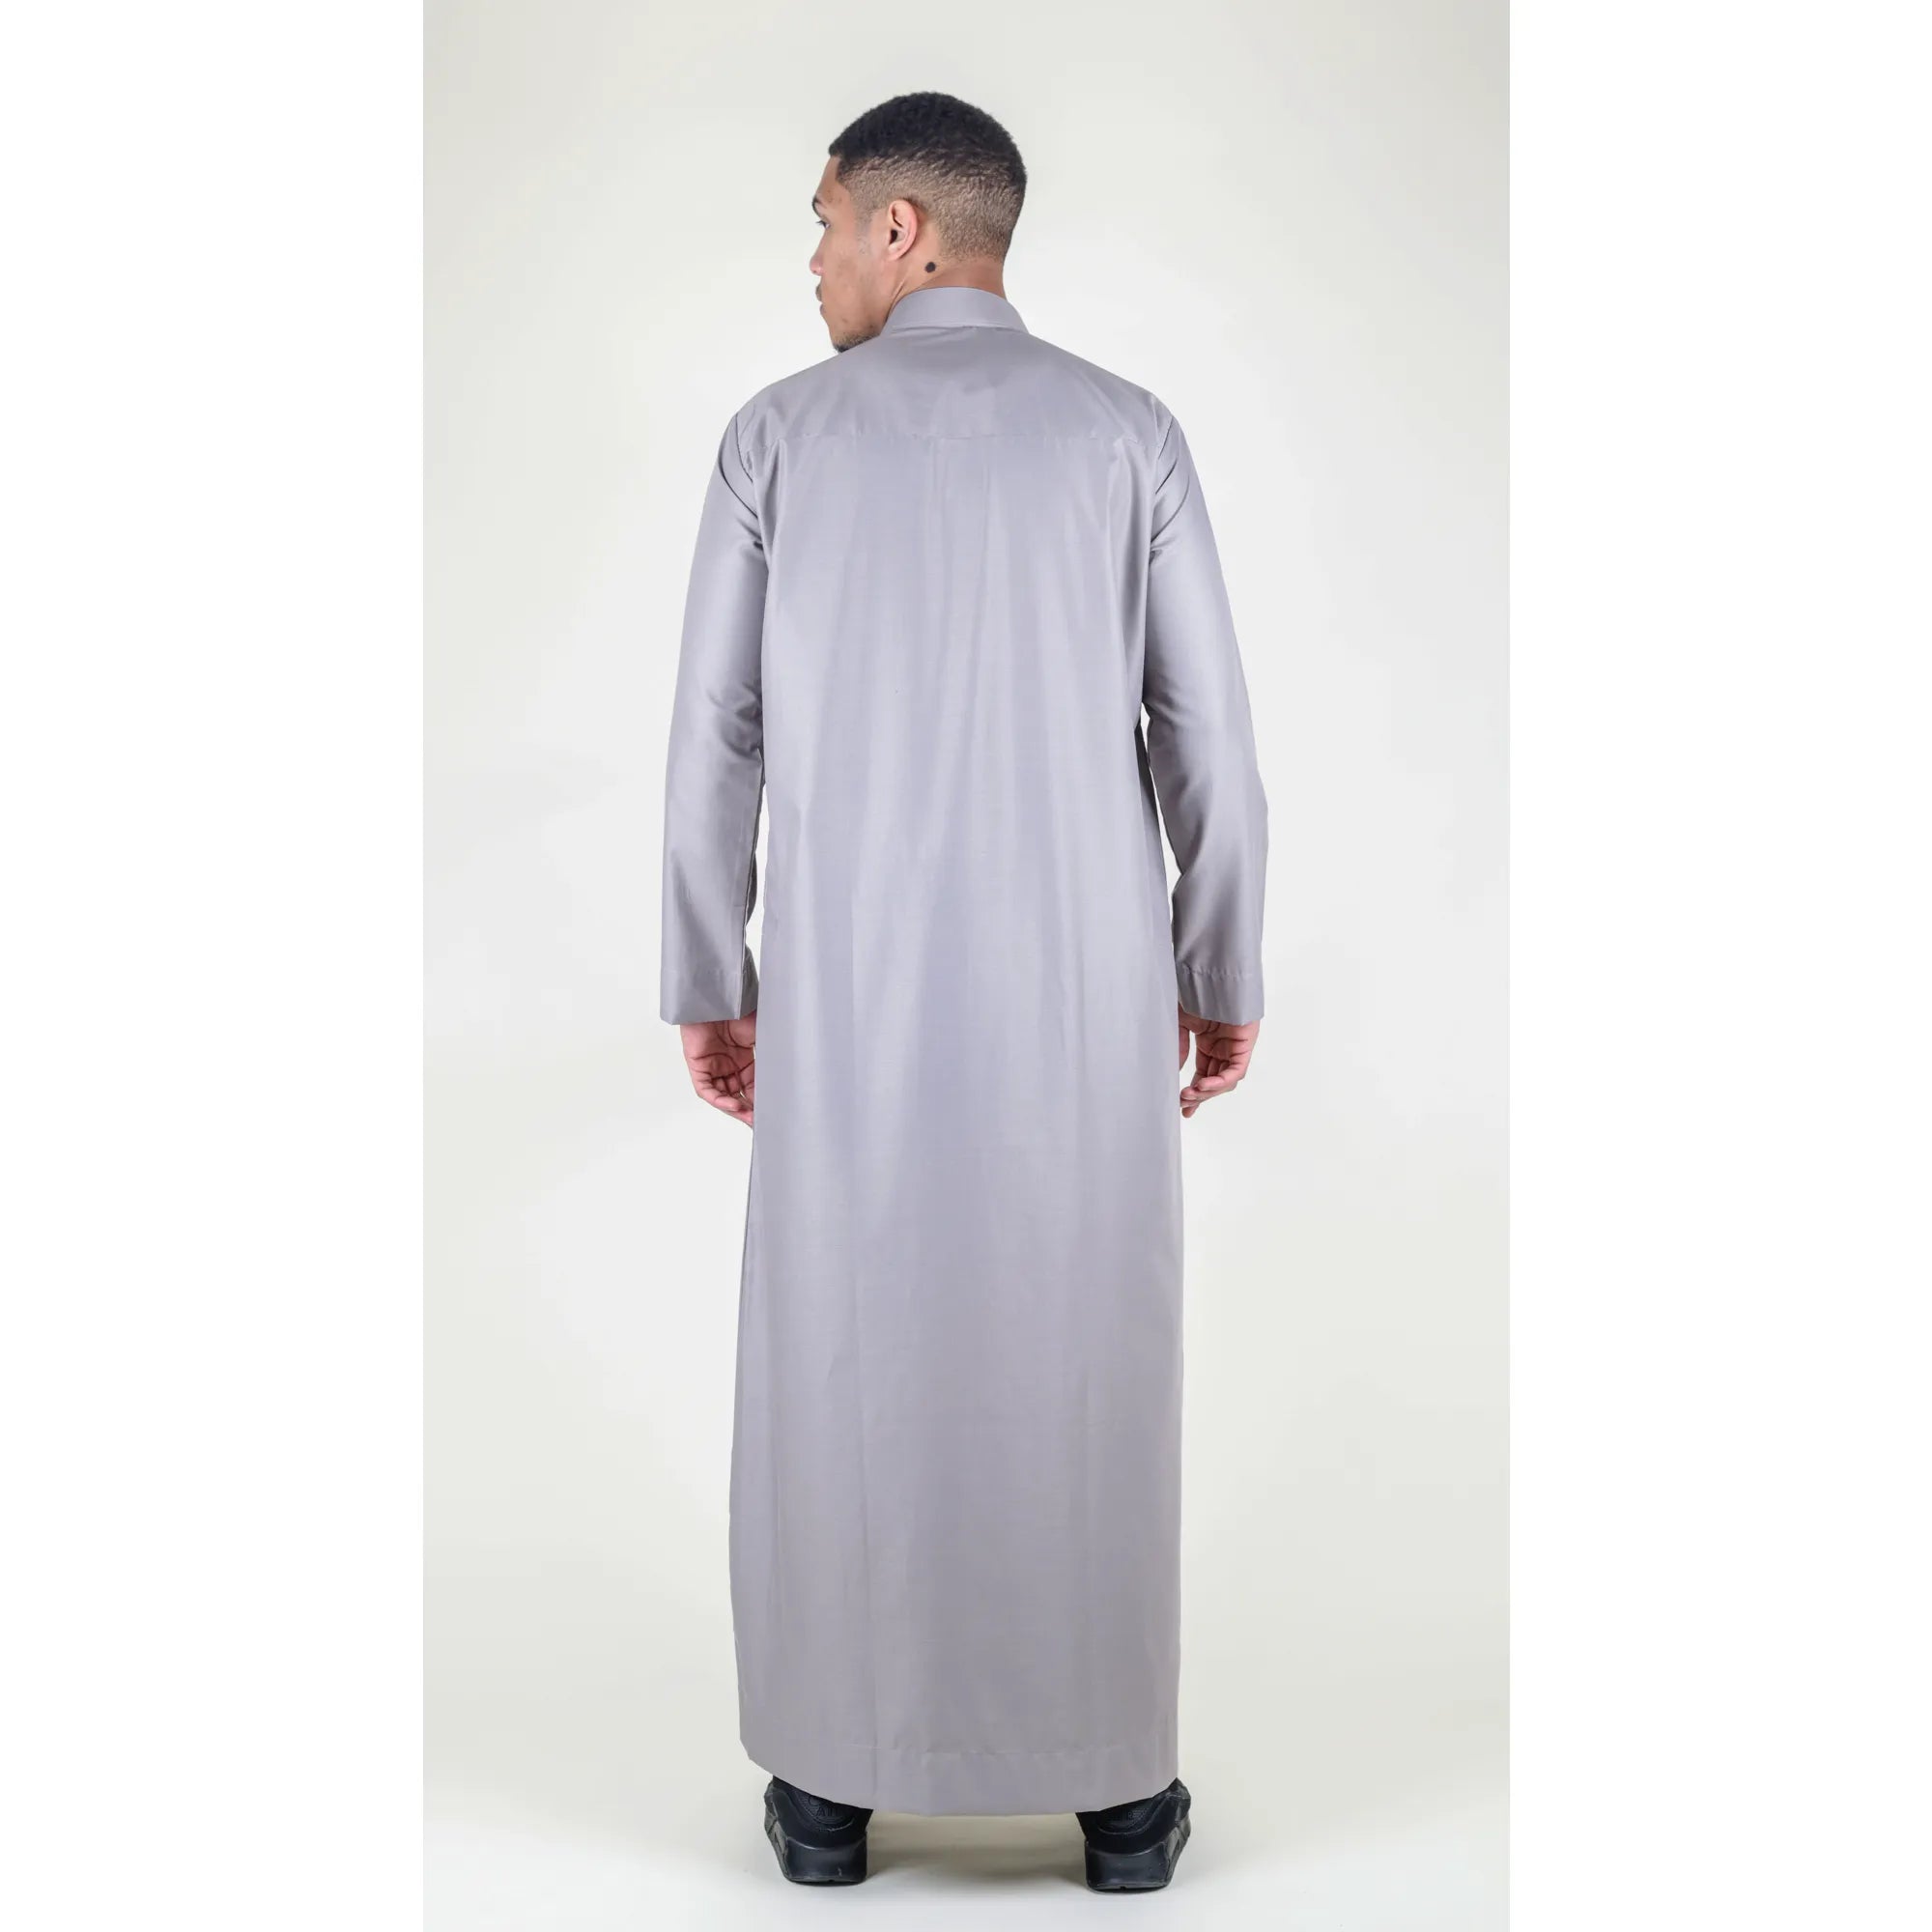 Vestimenta musulmana y arabe Jubba de algodón con cuello nehru para hombre